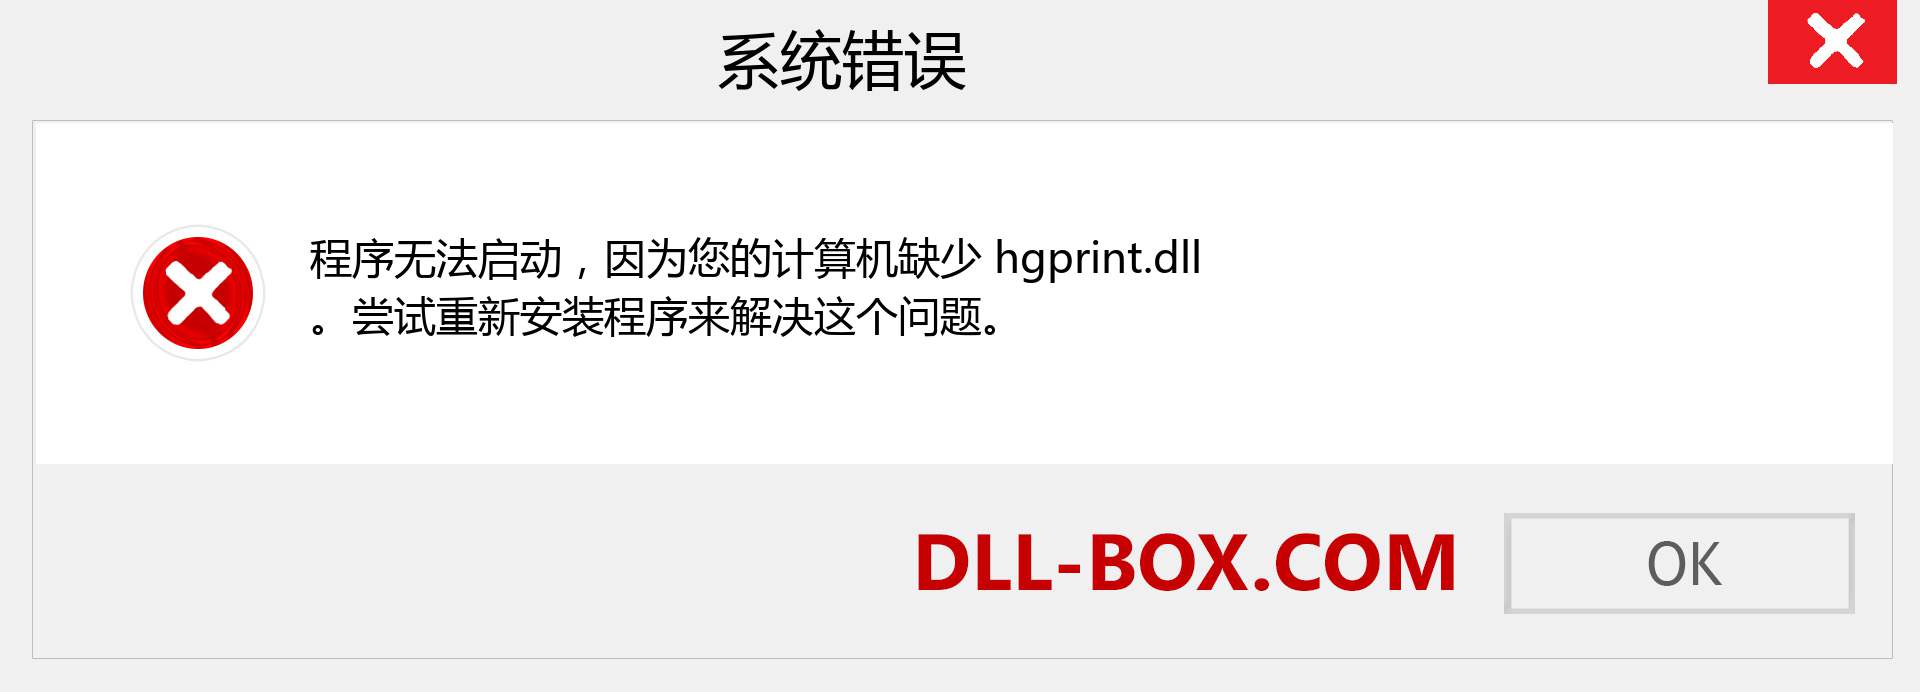 hgprint.dll 文件丢失？。 适用于 Windows 7、8、10 的下载 - 修复 Windows、照片、图像上的 hgprint dll 丢失错误